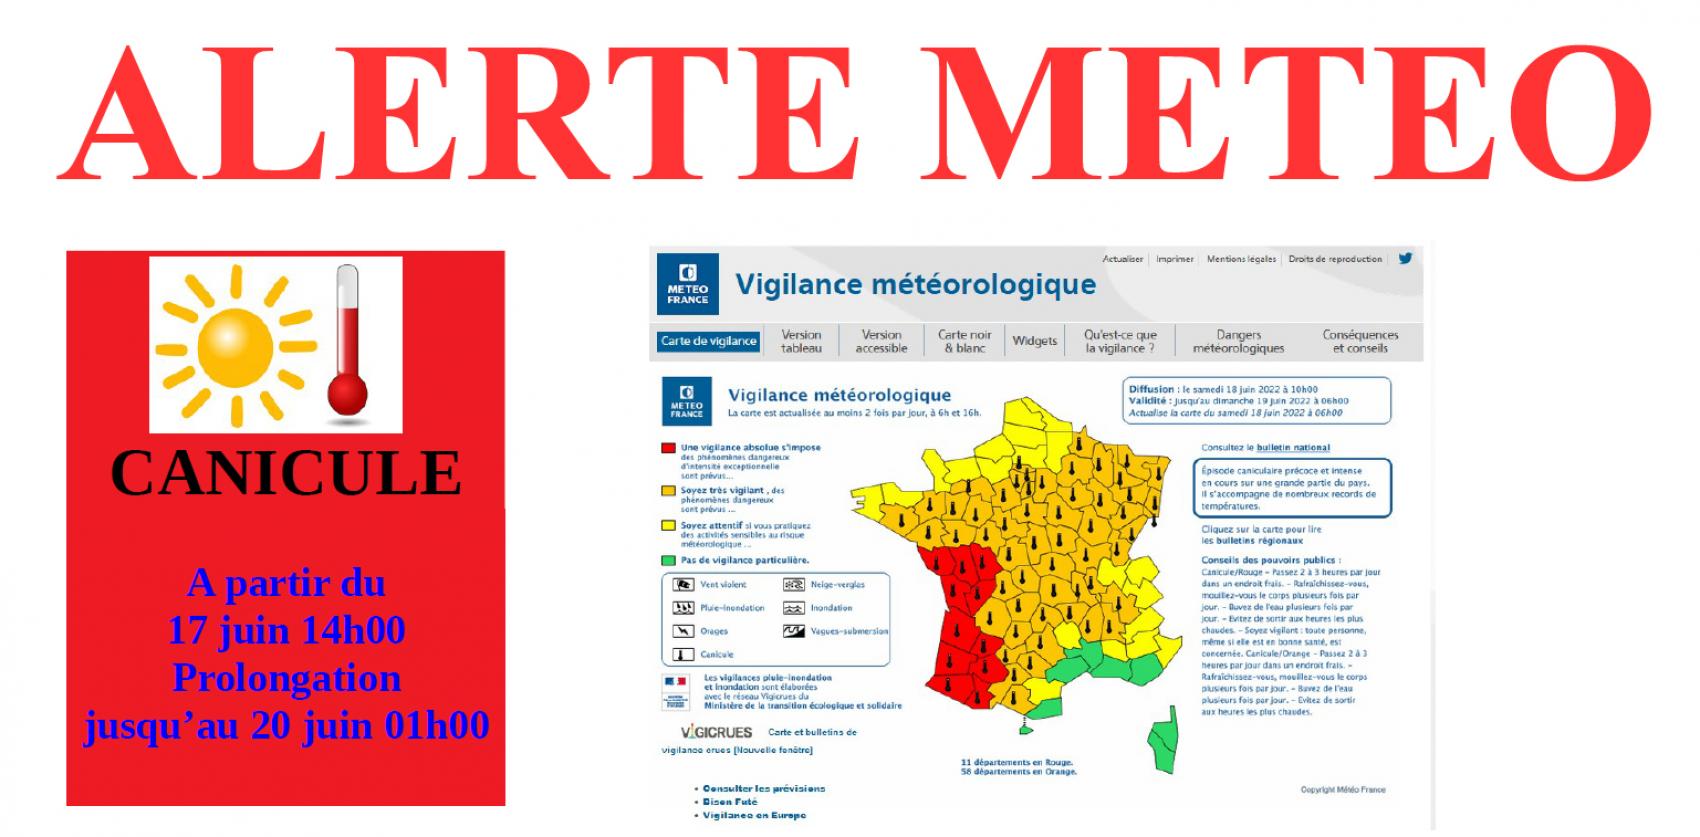 ALERTE MÉTÉO - VIGILANCE ROUGE, CANICULE - À partir du vendredi 17 juin à 14h00 - Prolongation jusqu’au 20 juin 01h00